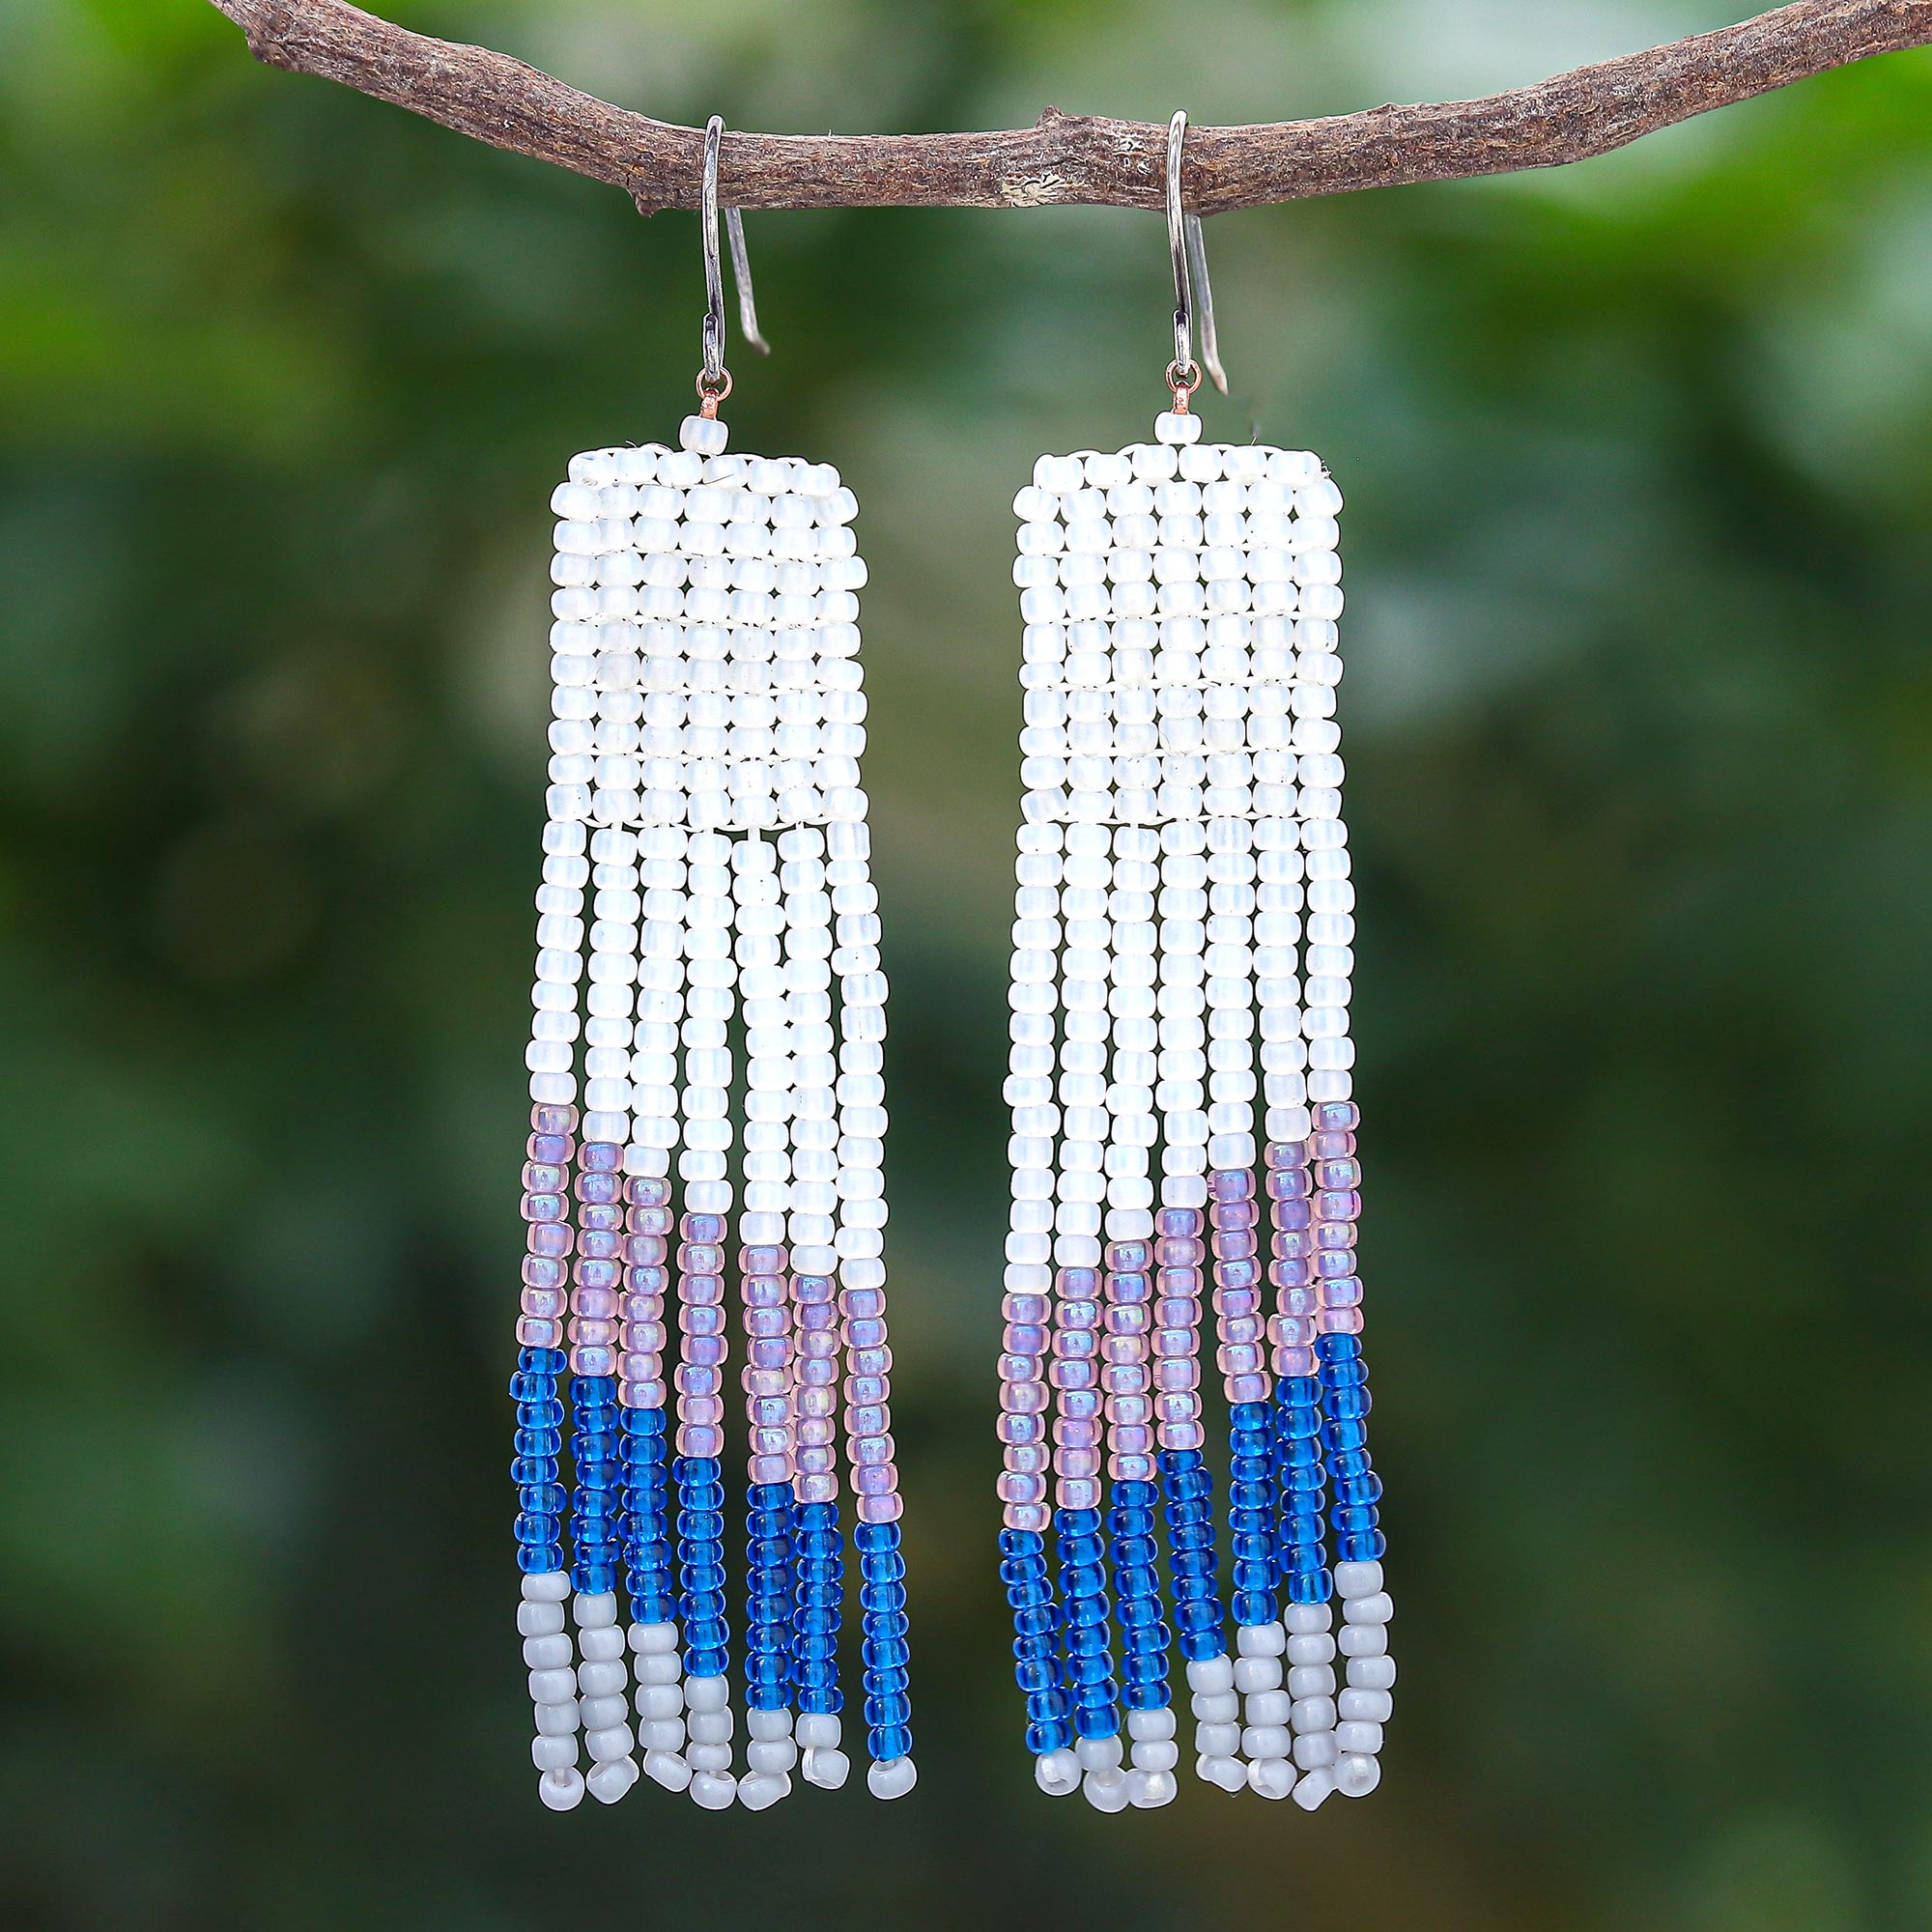 Bead pattern for striped earrings